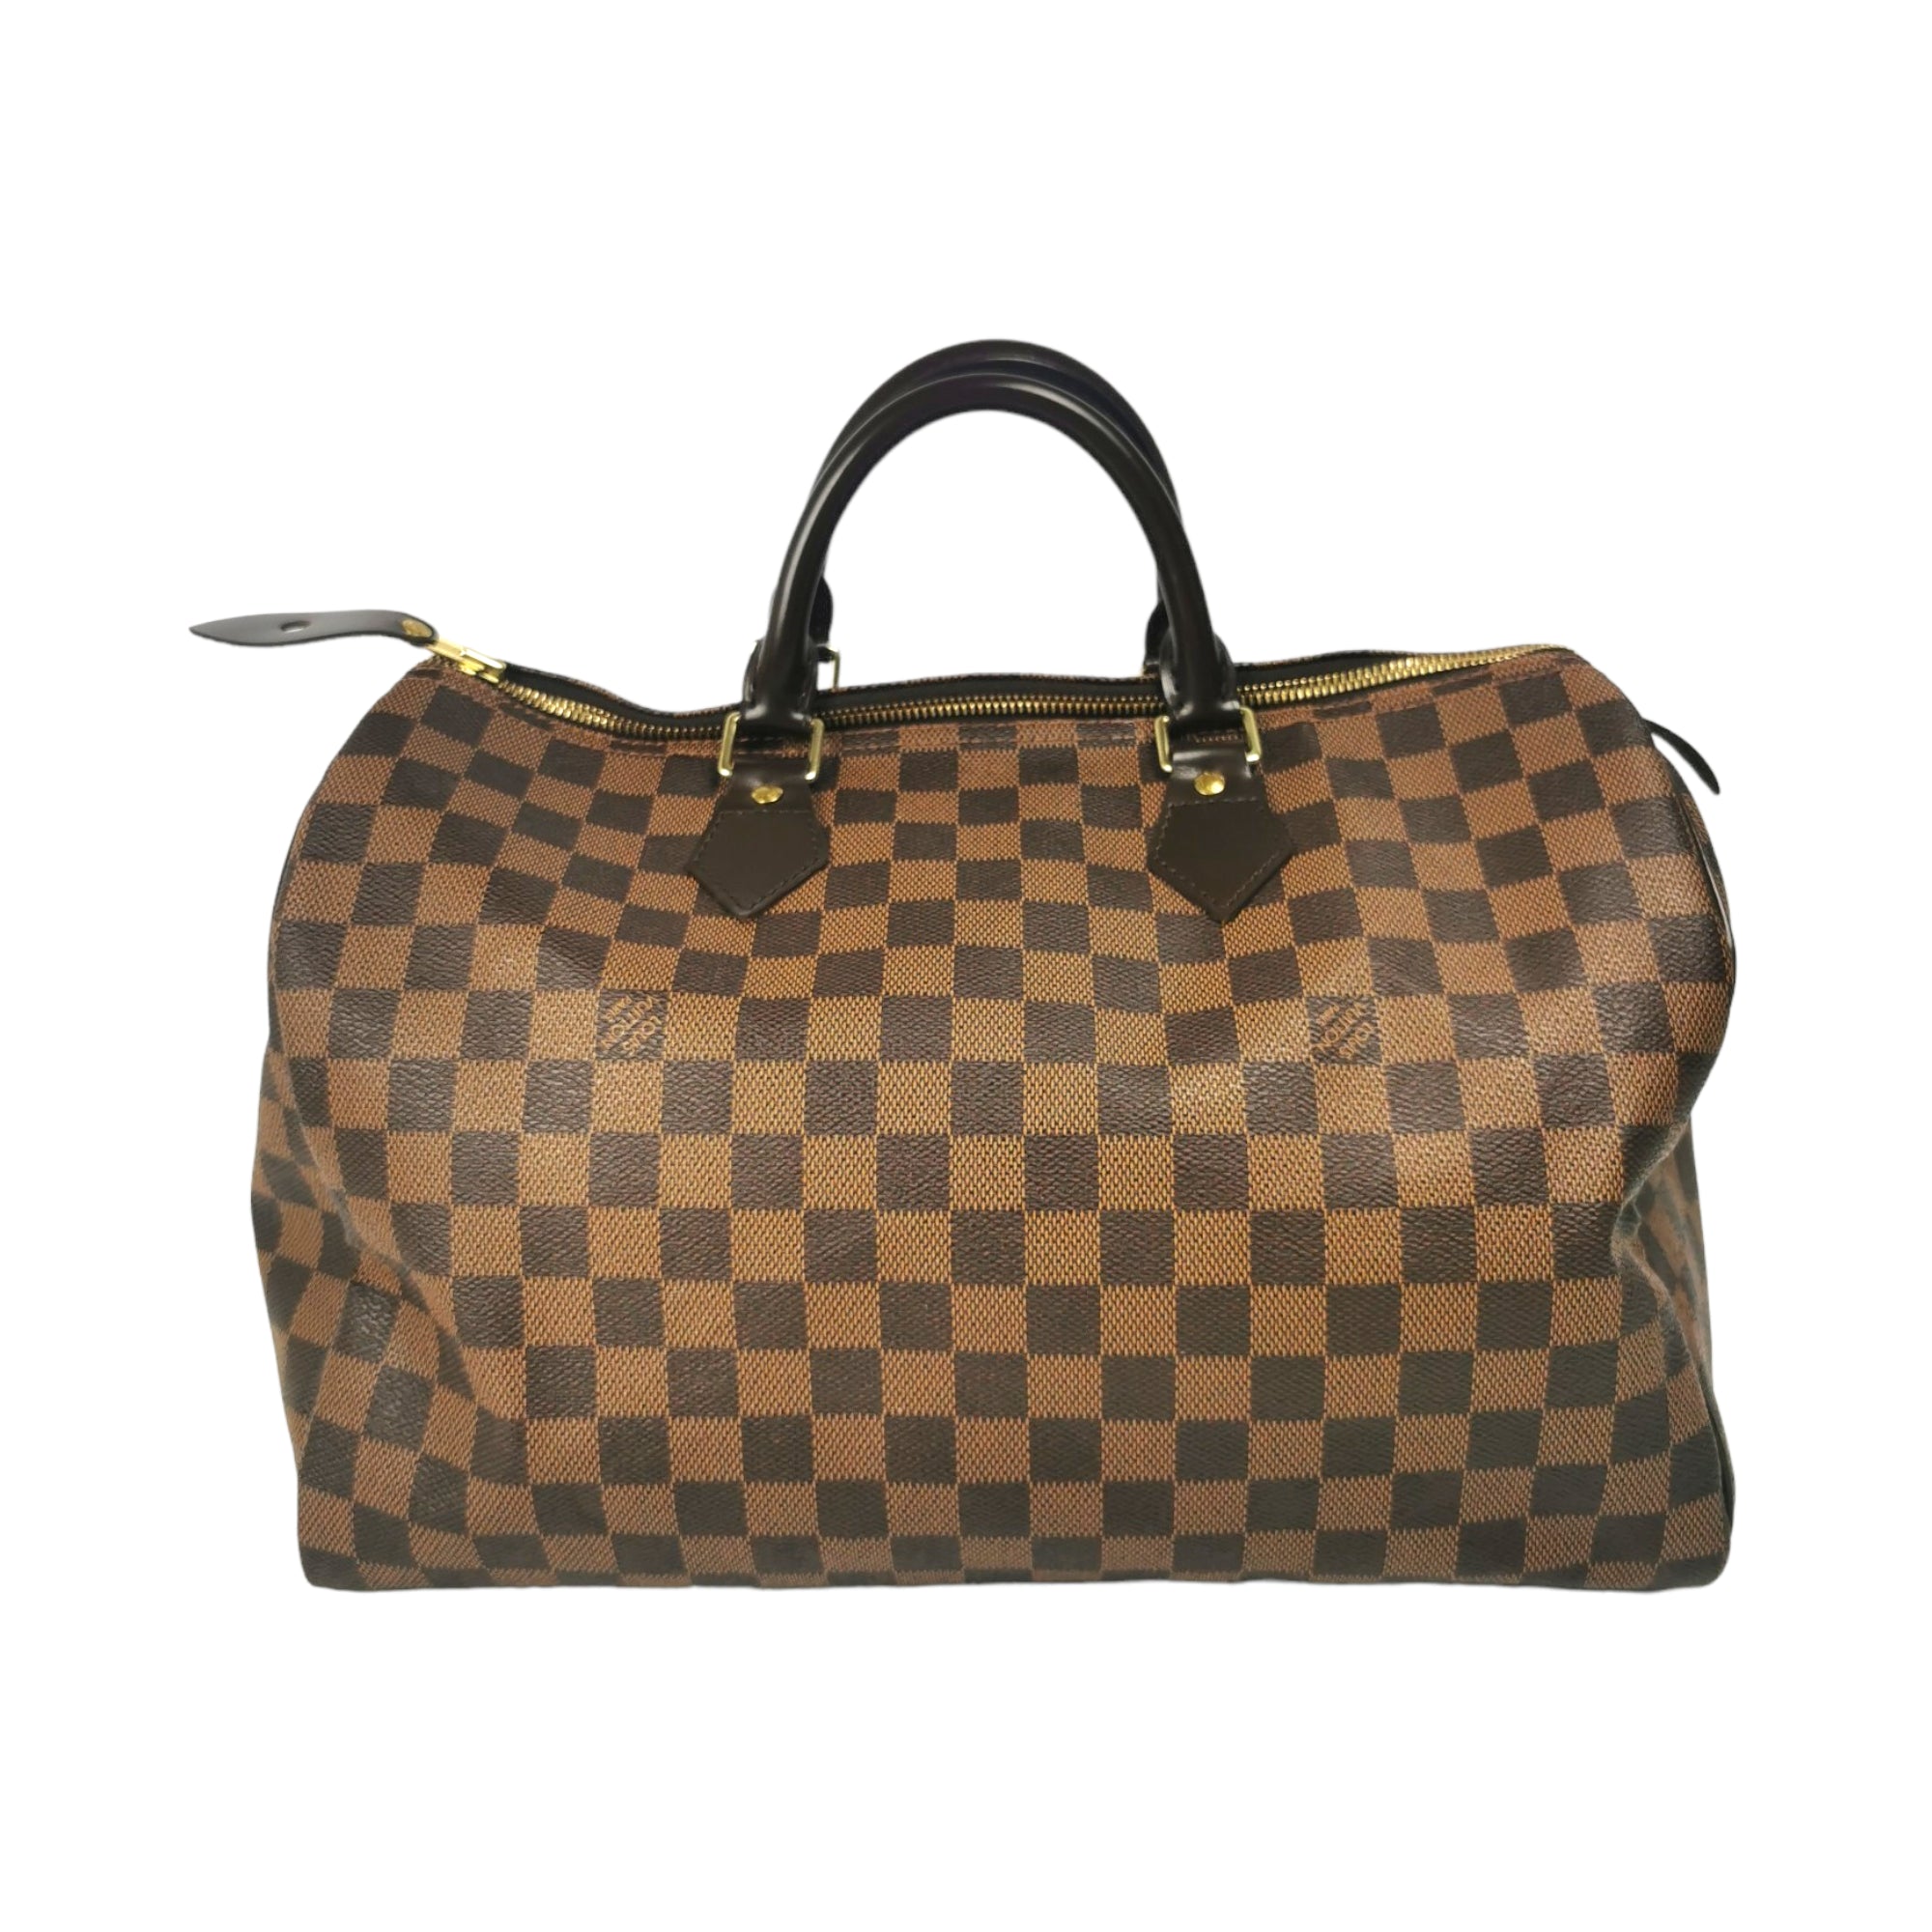 Authentic Louis Vuitton speedy 35 Damier Azur canvas handbag for